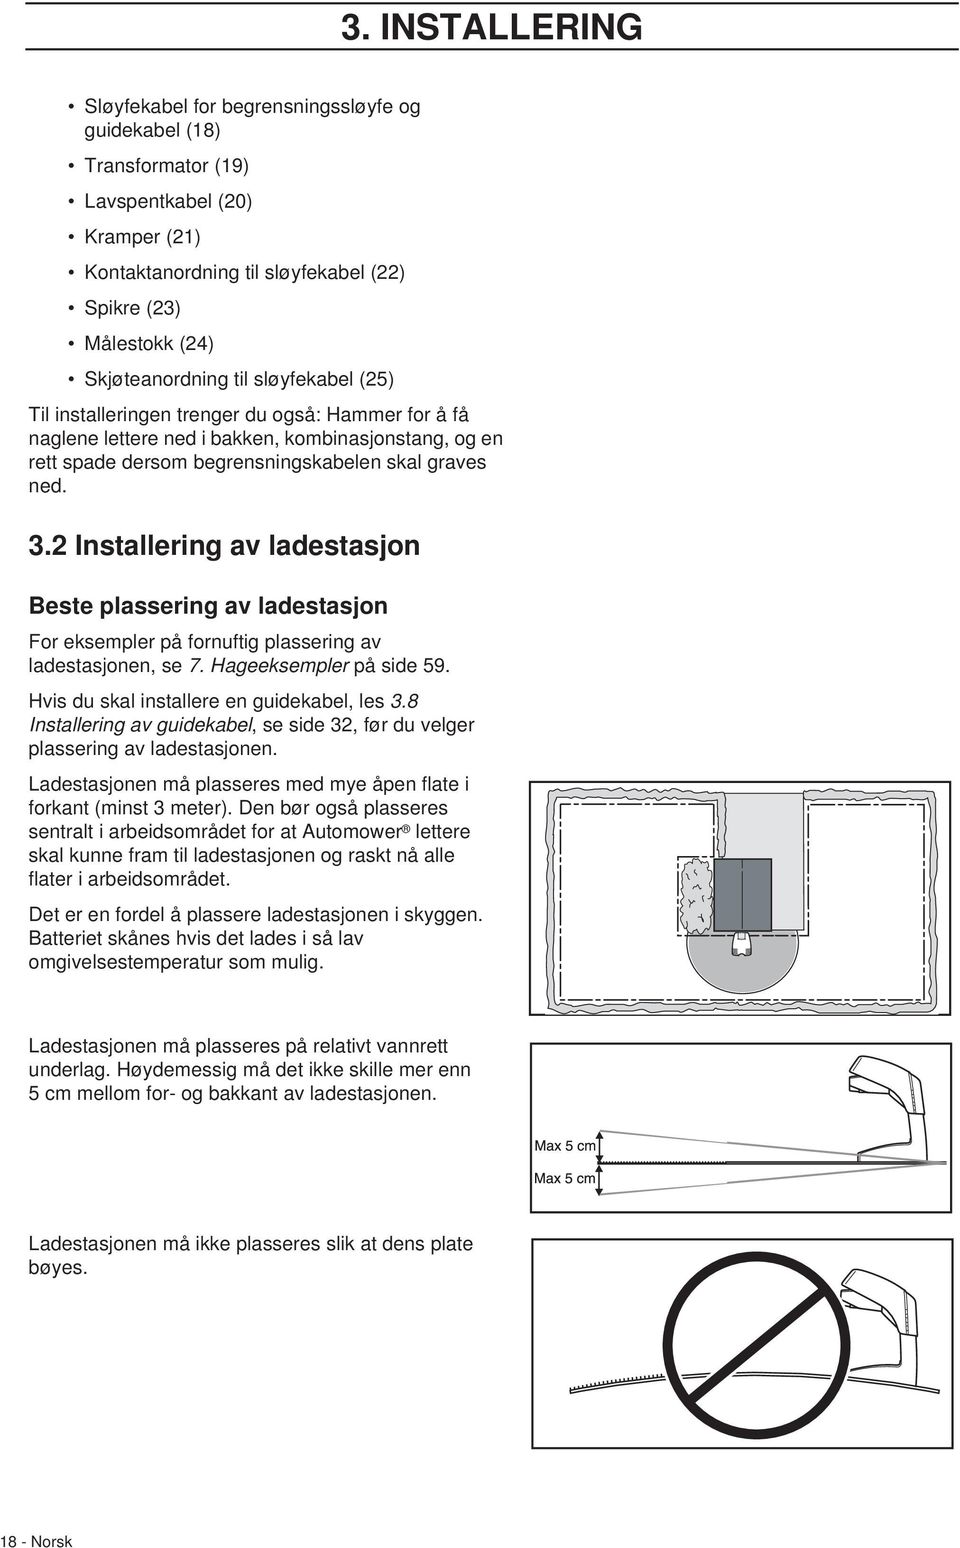 2 Installering av ladestasjon Beste plassering av ladestasjon For eksempler på fornuftig plassering av ladestasjonen, se 7. Hageeksempler på side 59. Hvis du skal installere en guidekabel, les 3.